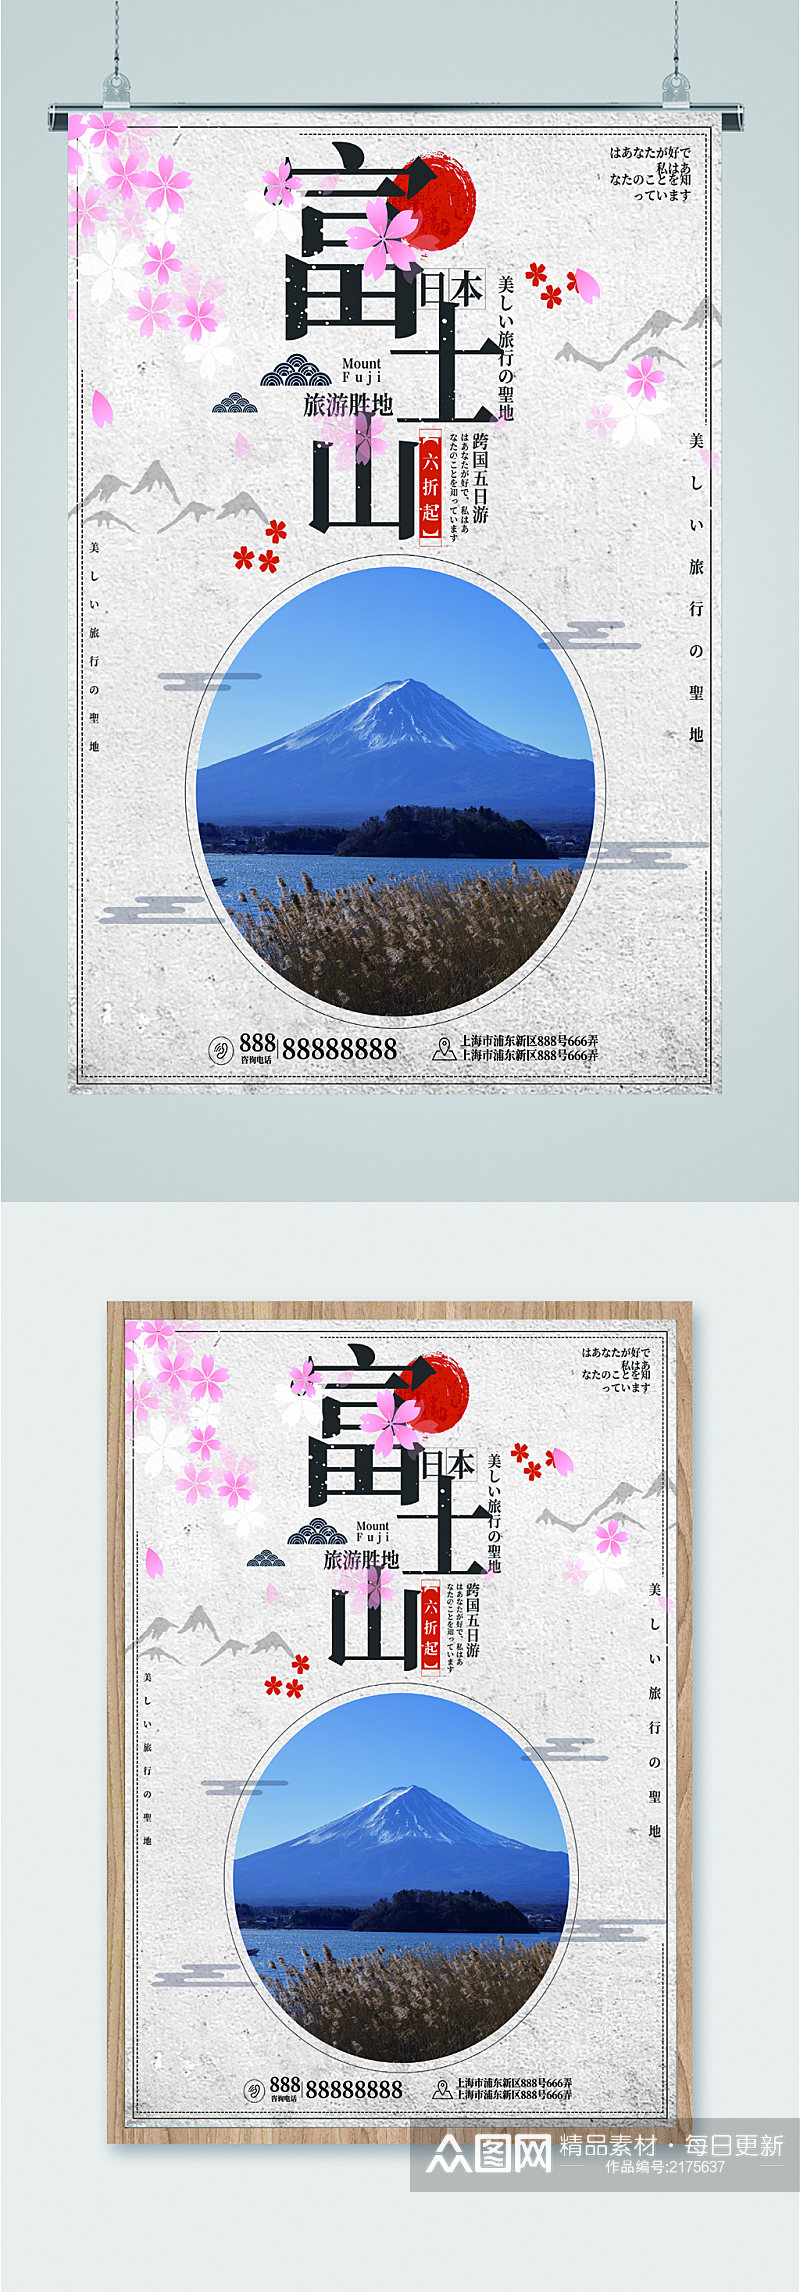 富士山风景旅游海报素材